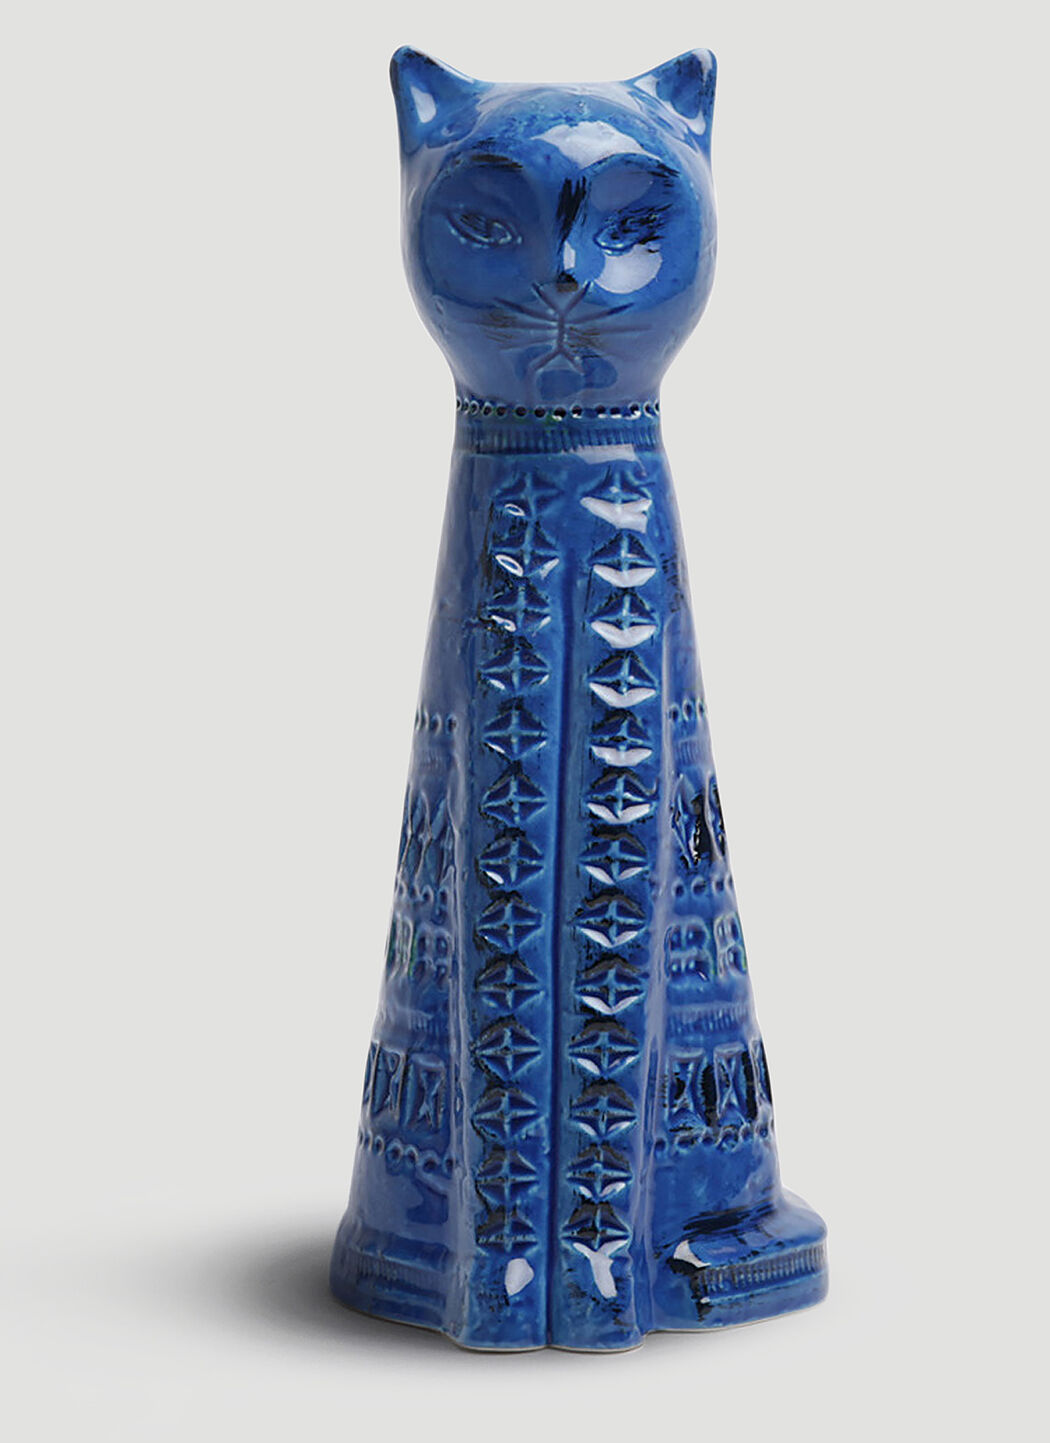 Bitossi Ceramiche Rimini Blu Tall Cat Figure Blue wps0644263